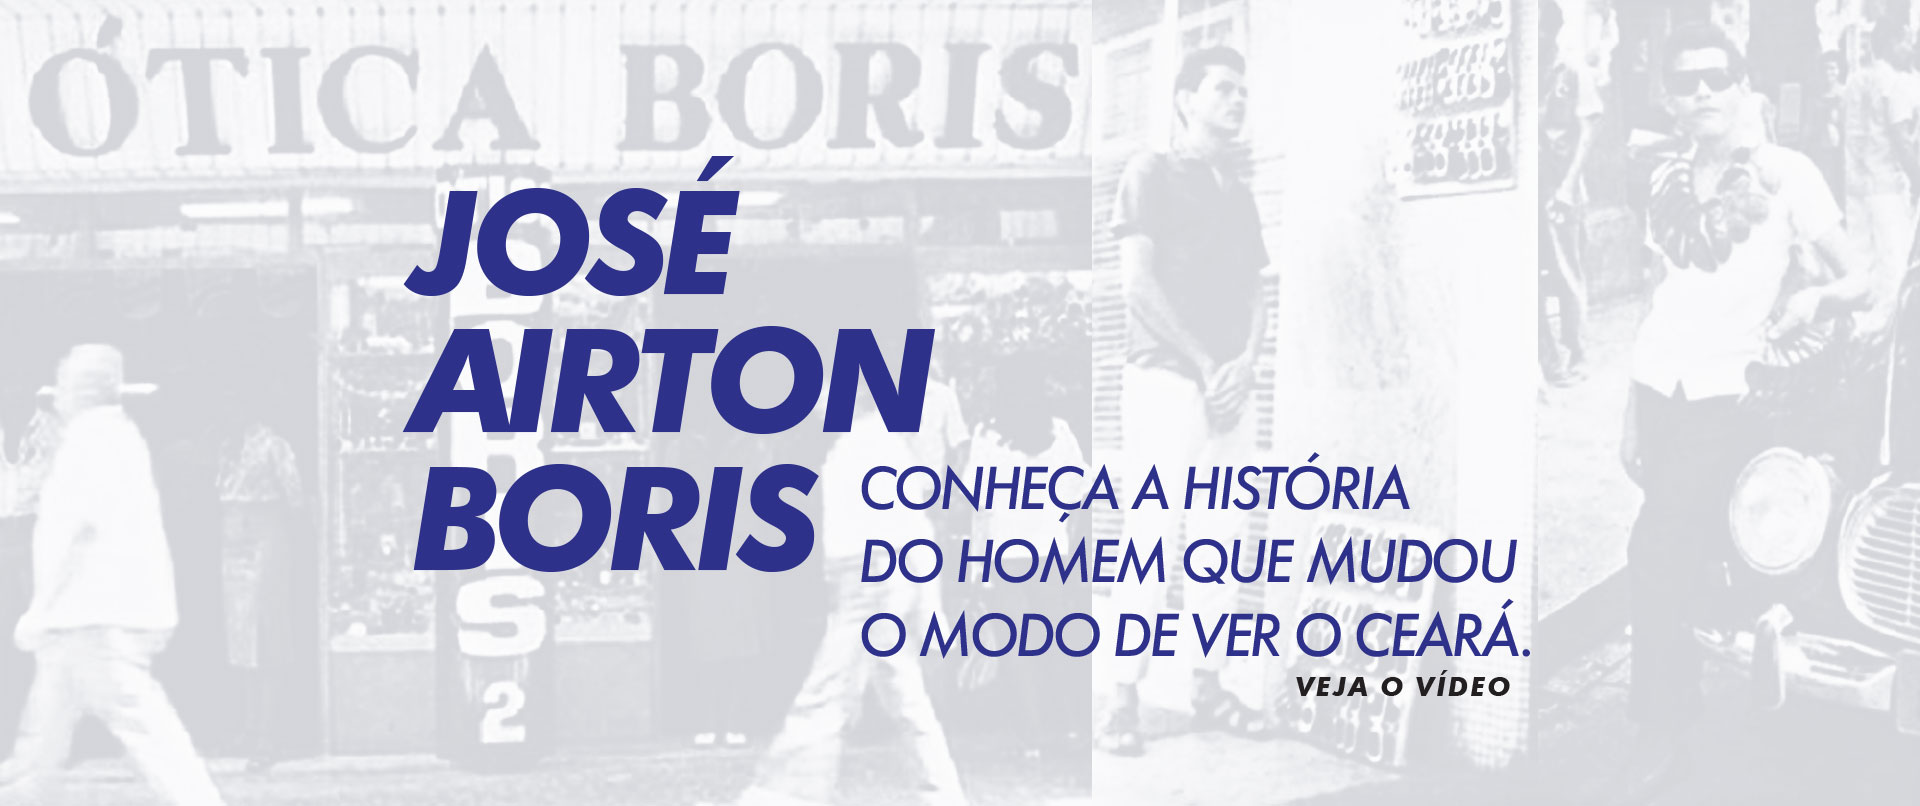 José Airton Boris